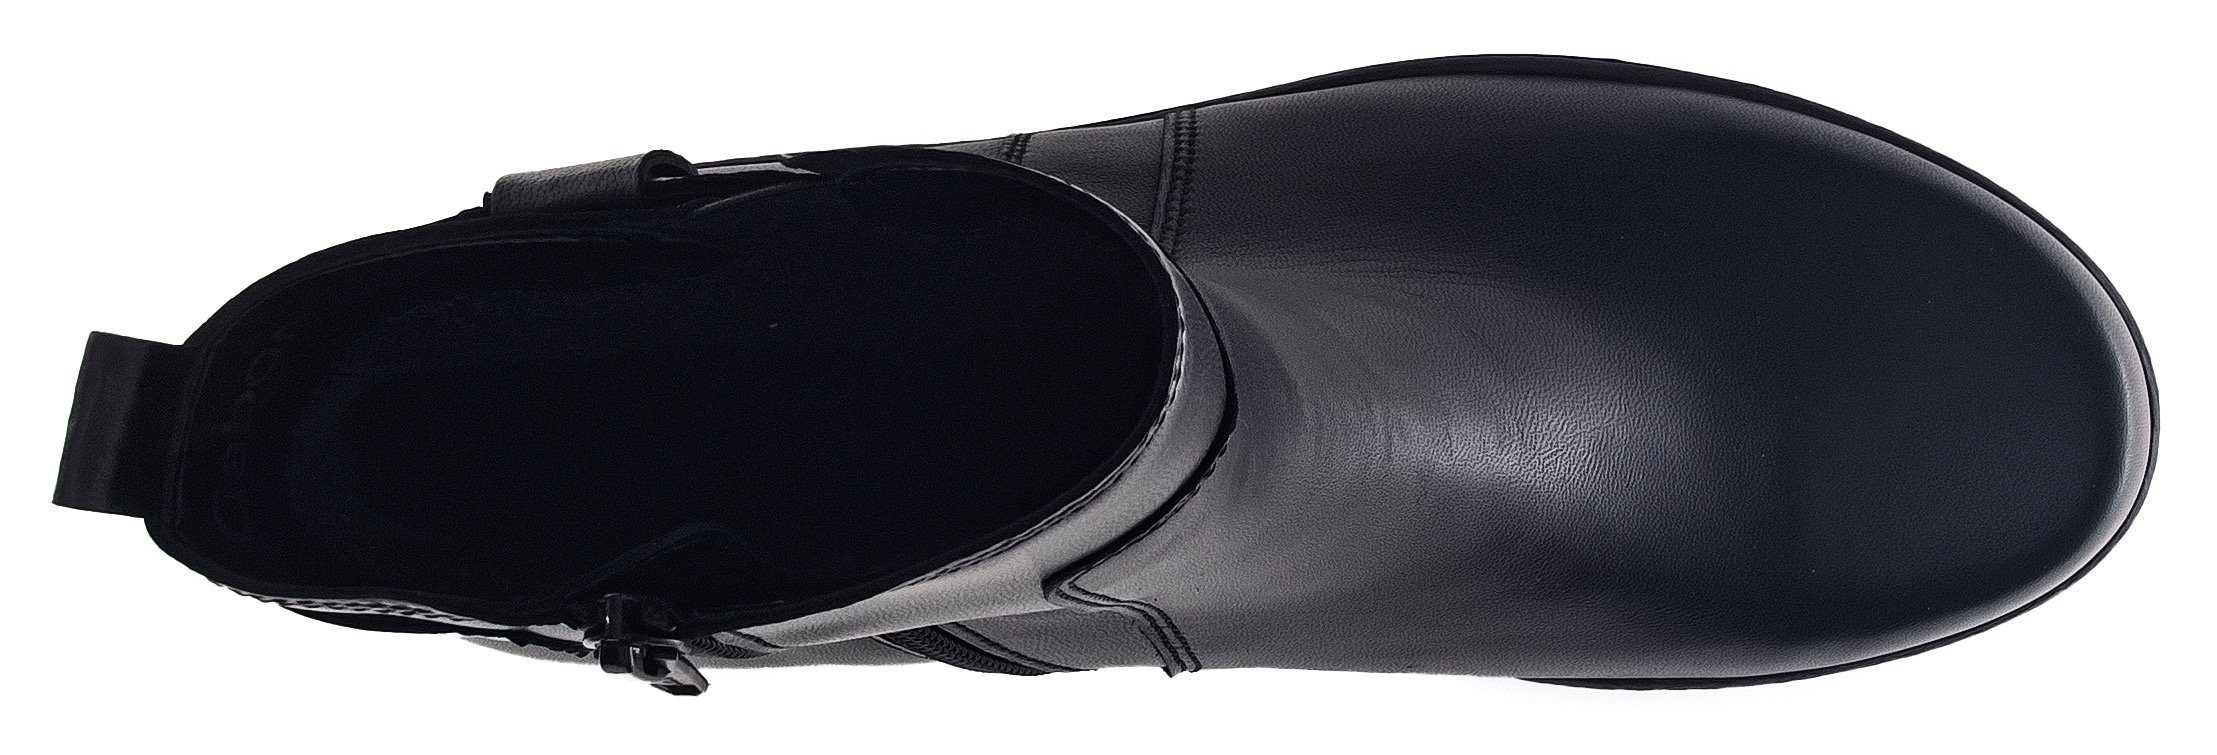 Fitting-Ausstattung mit Best Stiefelette Gabor schwarz